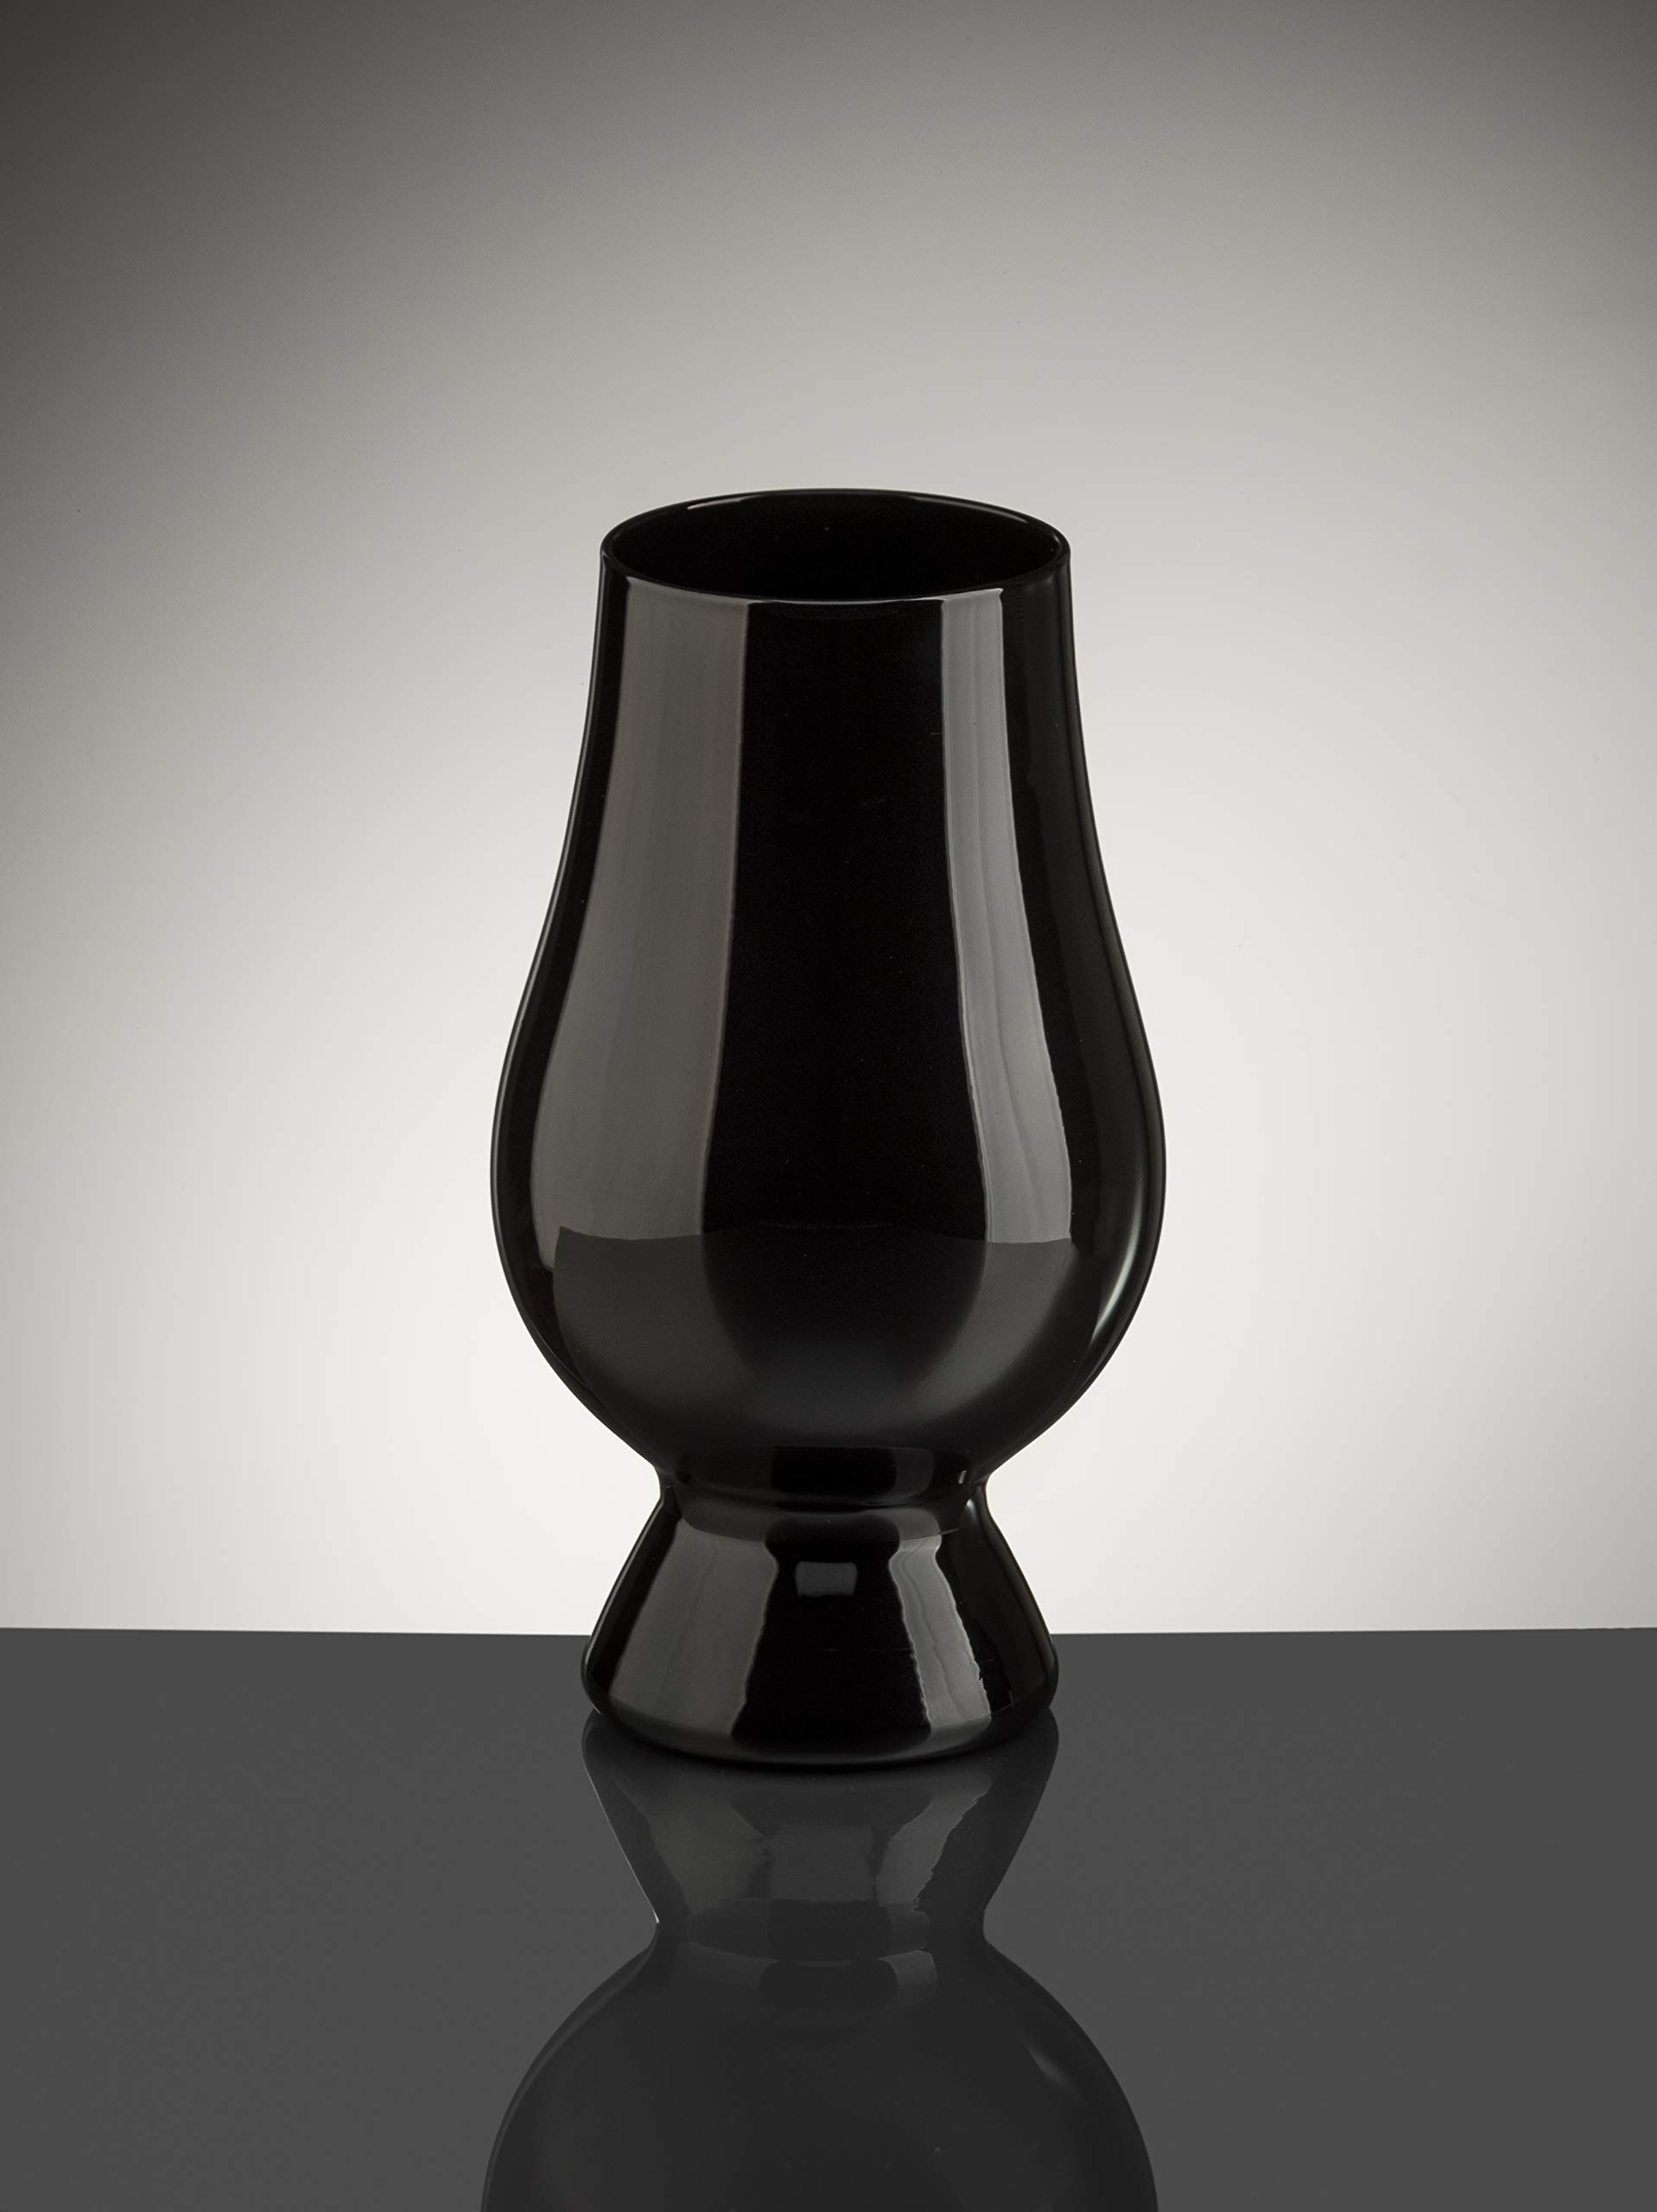 GLENCAIRN BLACK WHISKY GLASS, SET OF 4 IN 4 PACK GIFT CARTON